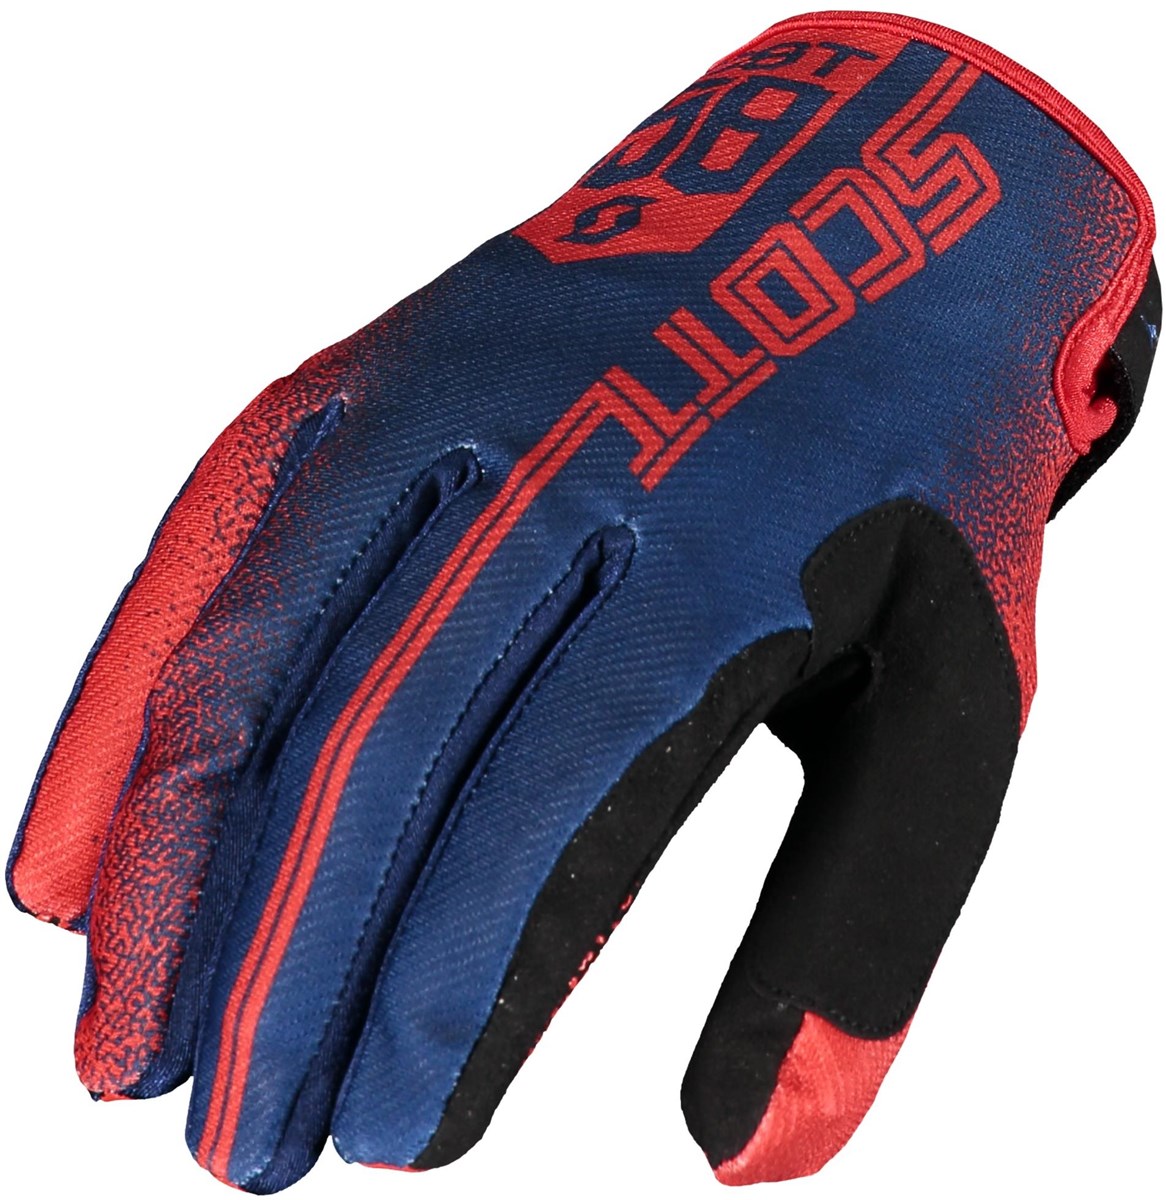 Scott 350 Race Long Finger Gloves product image